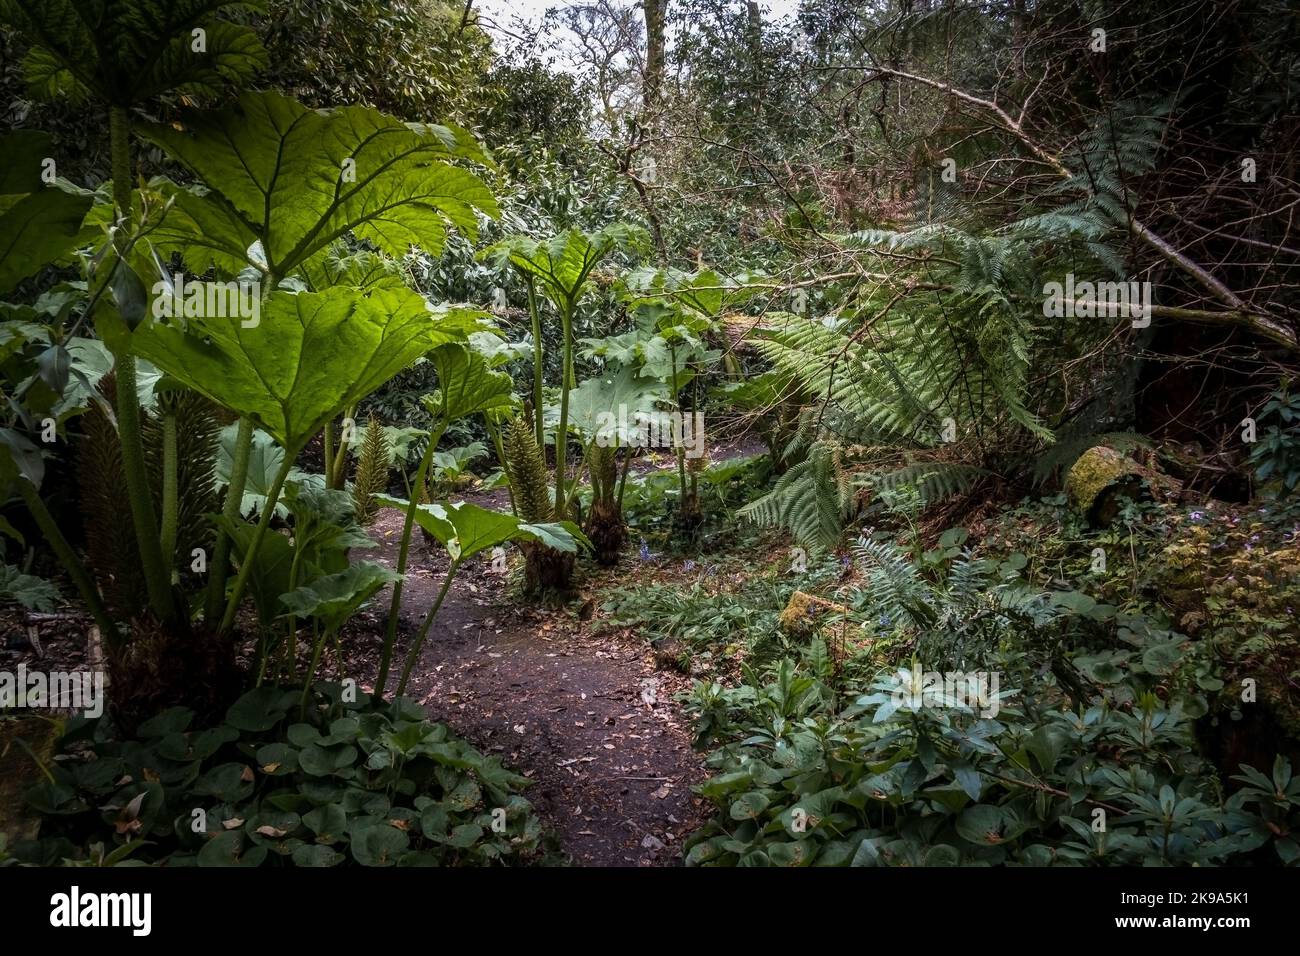 Un sentier dans le jardin sauvage subtropical Penjjick à Cornwall. Penjerrick Garden est reconnu comme le véritable jardin de la jungle de Cornmuls en Angleterre au Royaume-Uni Banque D'Images